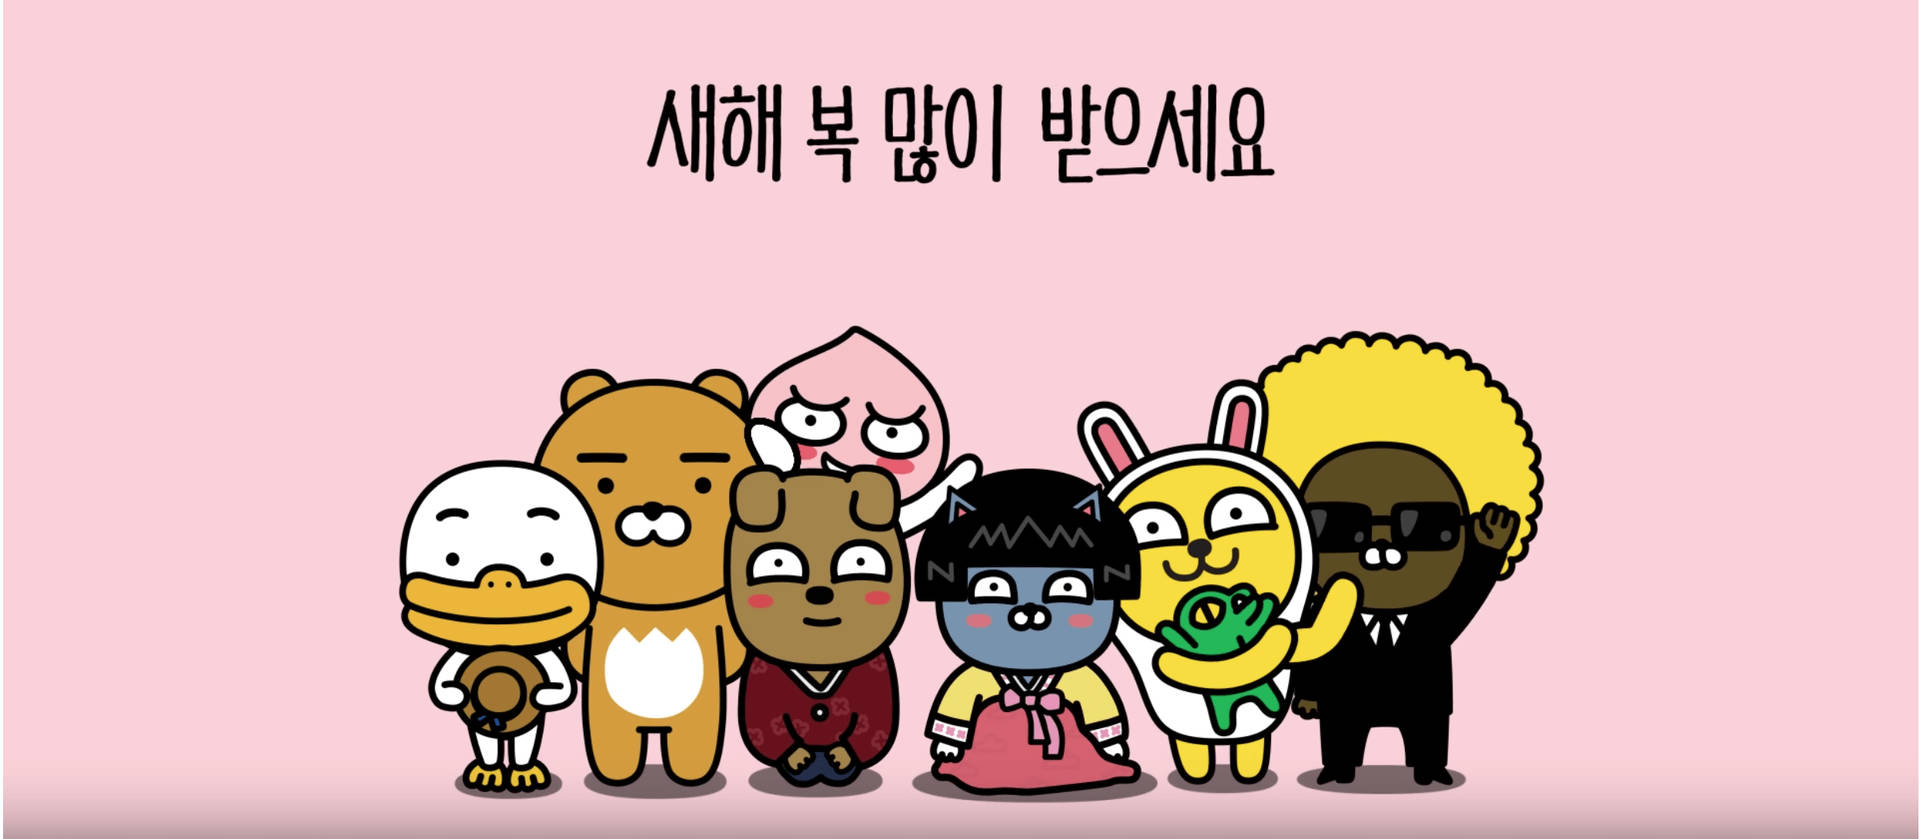 Meet The Cute Kakao Friends Gang! Background